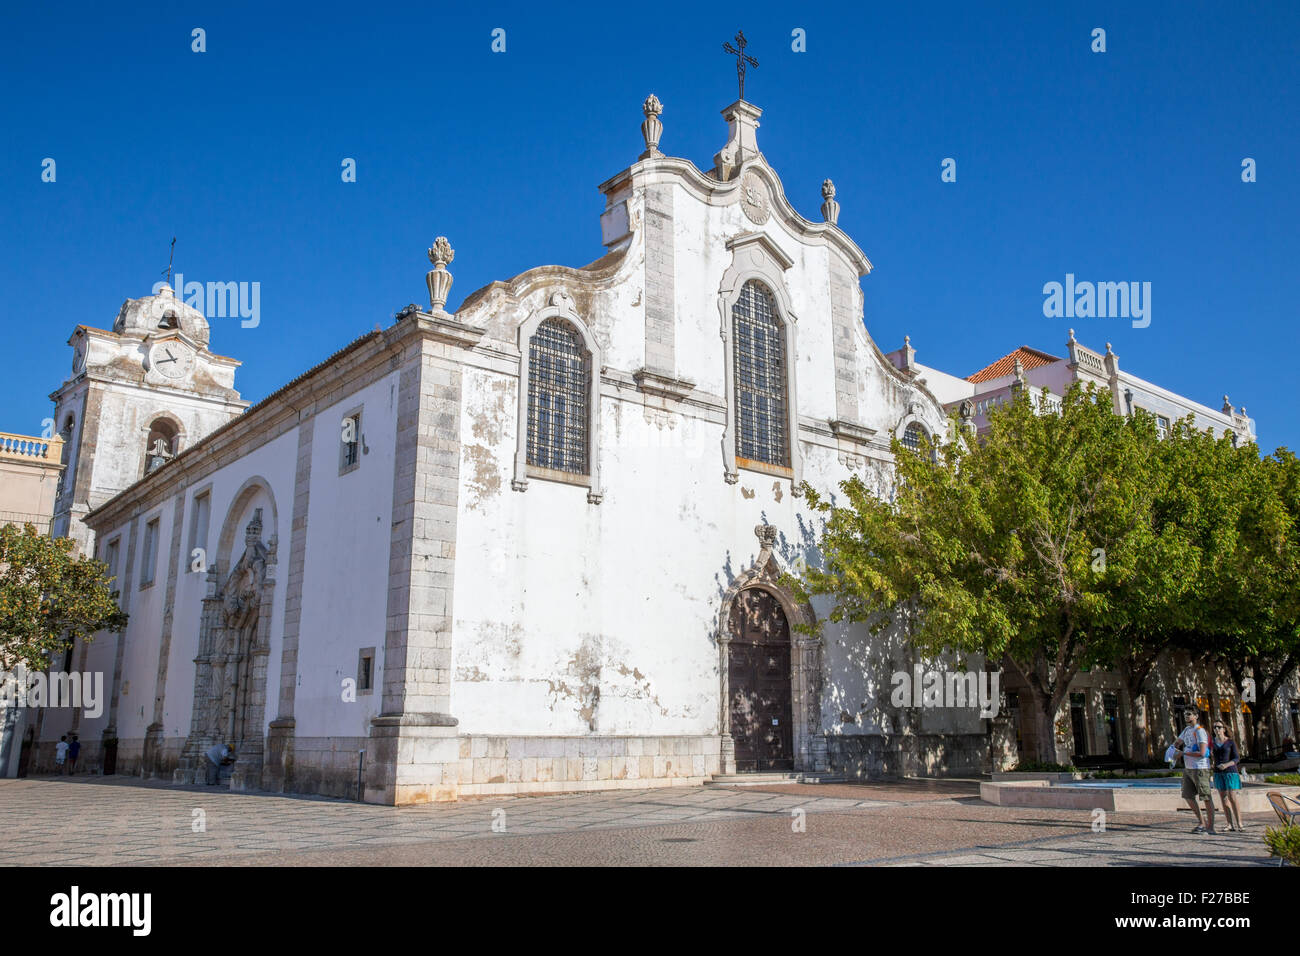 Igreja de S. Juliao, Église de Saint Julian, Praça de bocage, la ville de Setubal, Portugal Banque D'Images